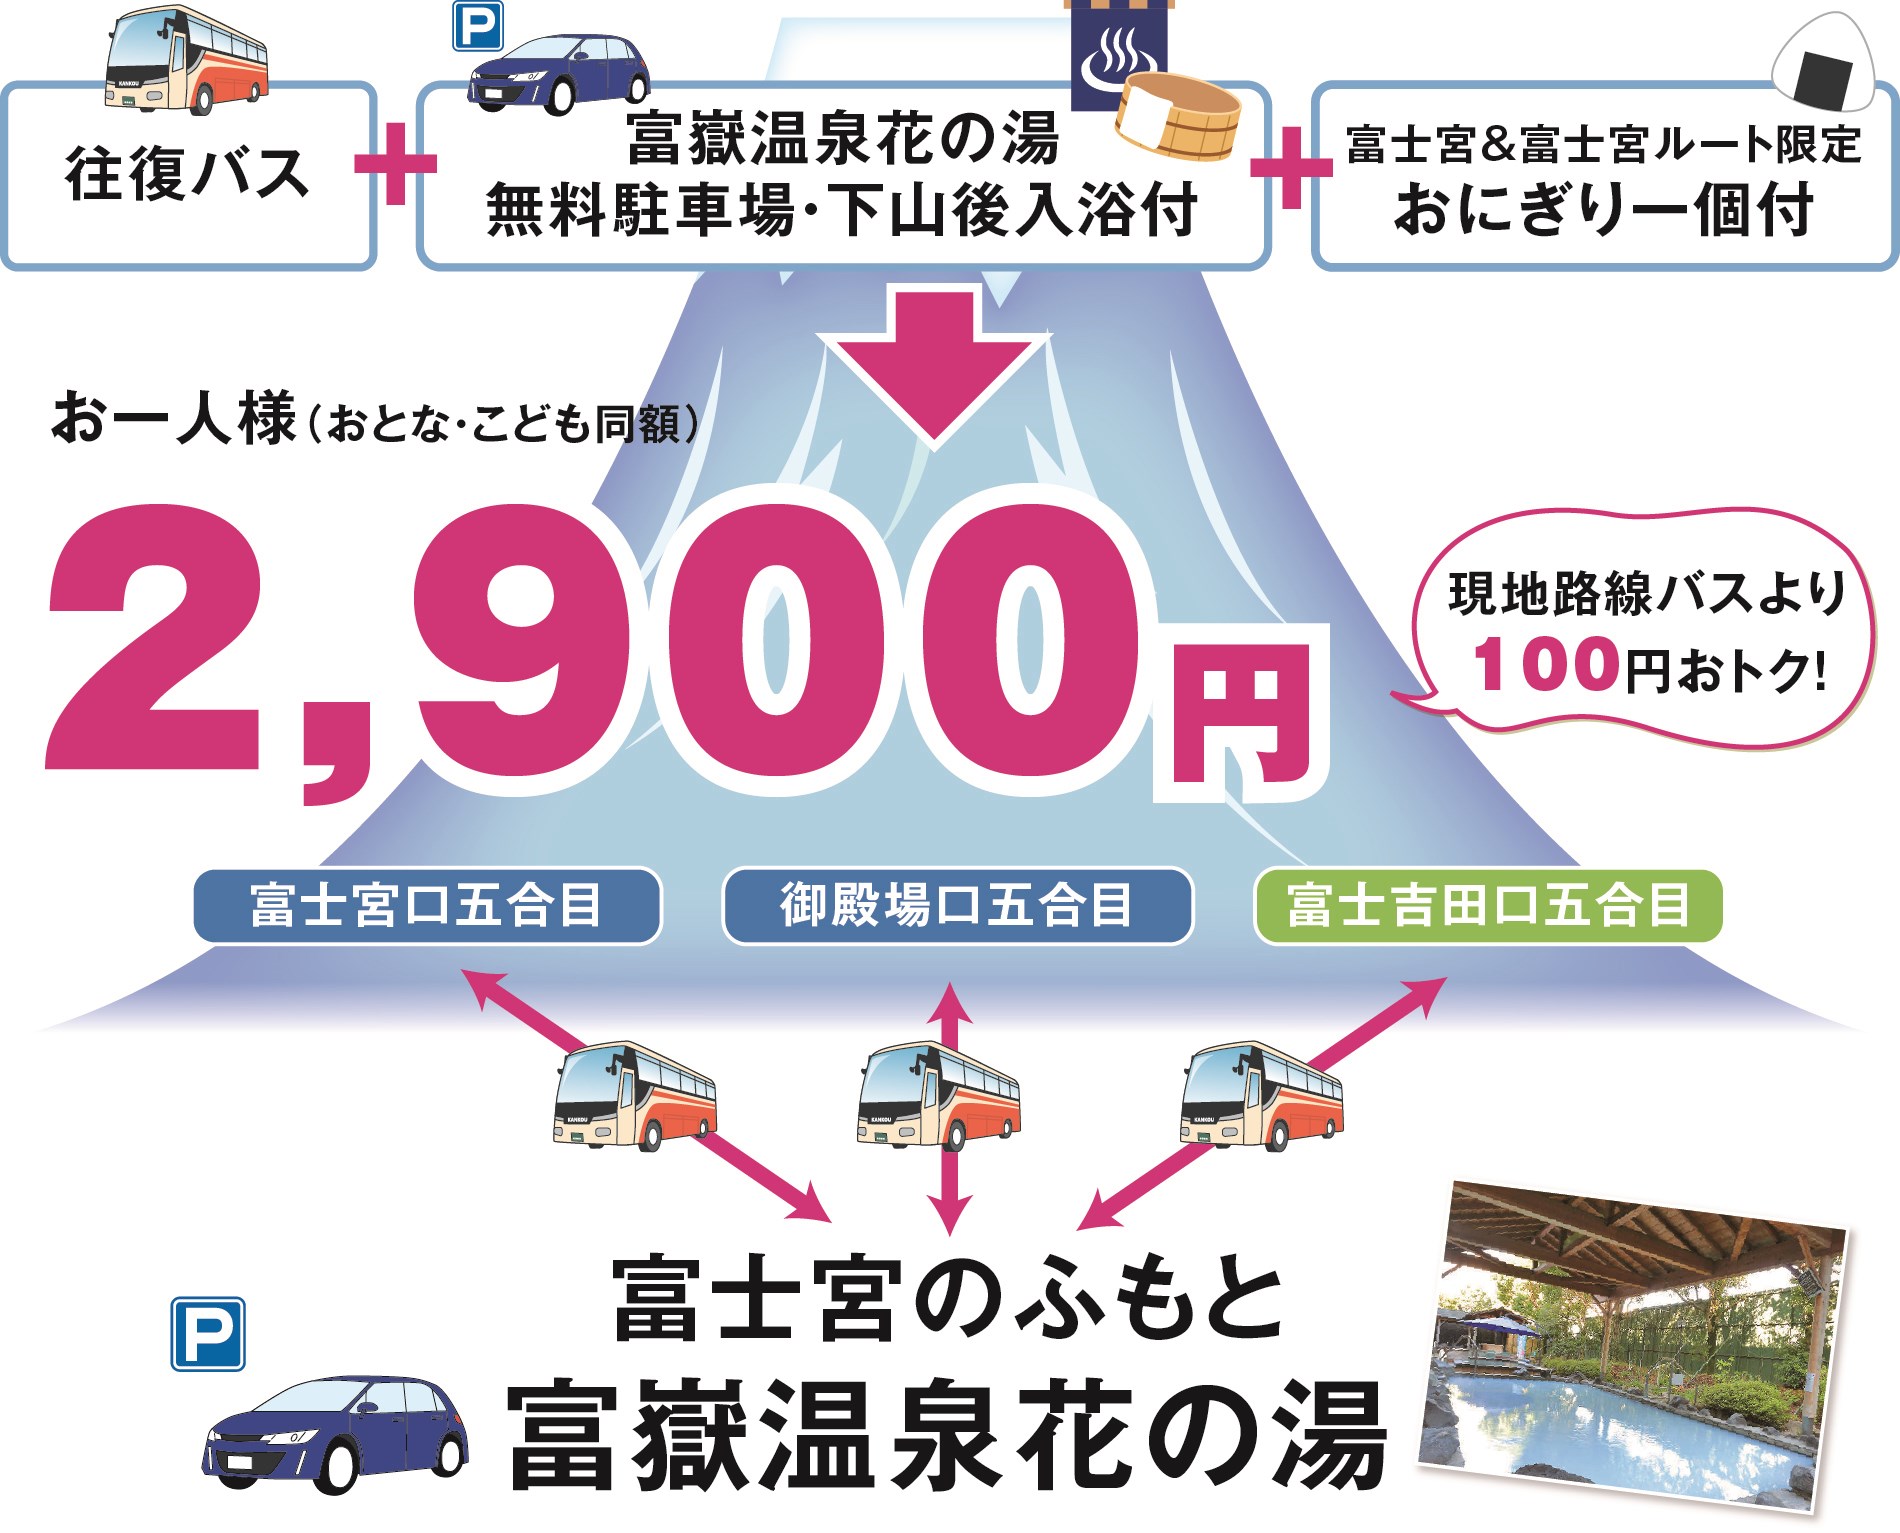 富士山五合目行 富士登山シャトルバス2900円